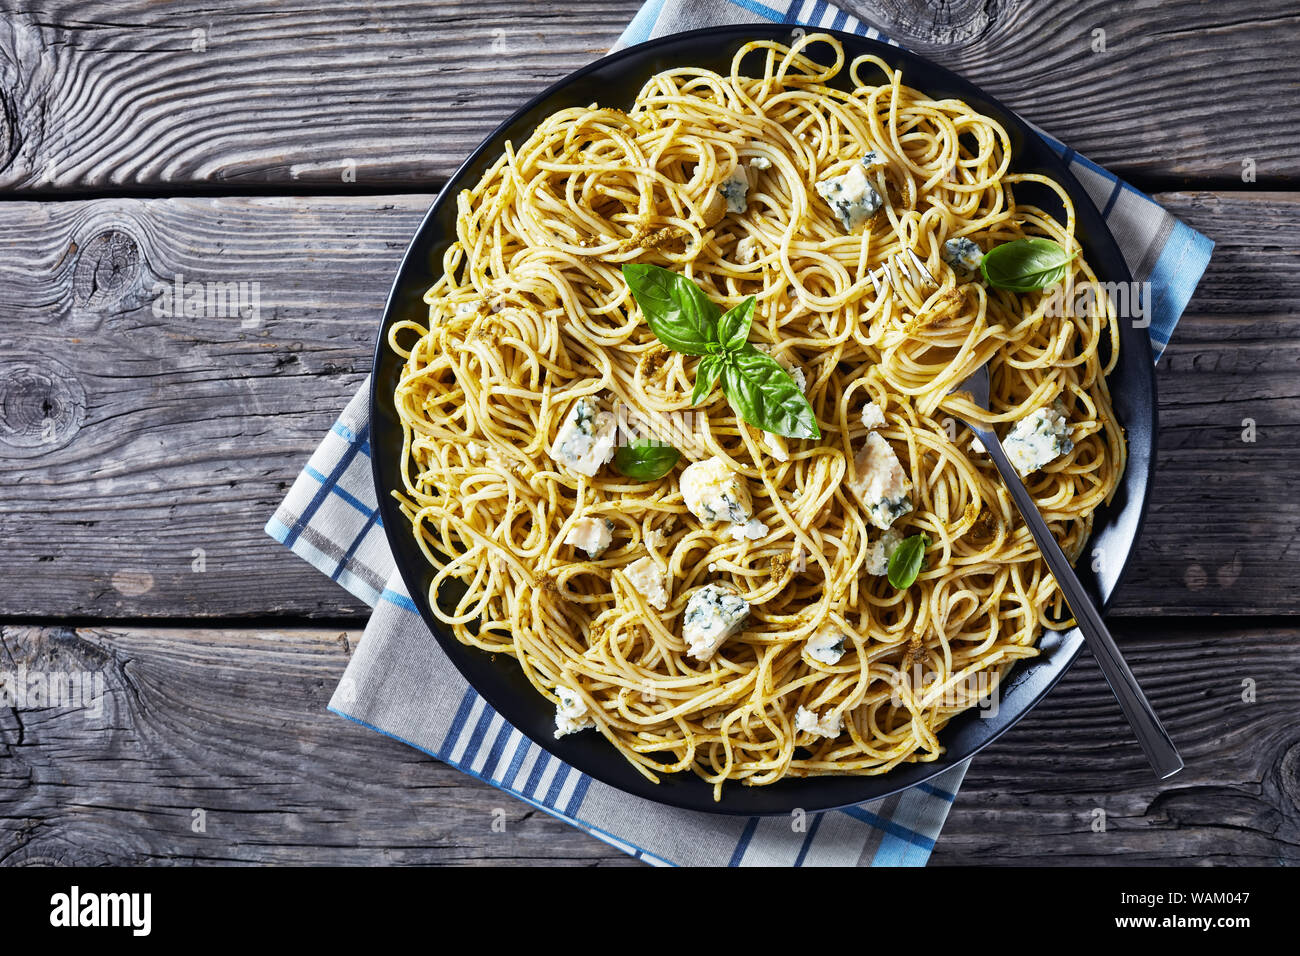 Vue de dessus de spaghetti au pesto de basilic genovese et le fromage bleu sur une plaque noire sur une table en béton avec des ingrédients sur une plaque en ardoise, vue à partir de Banque D'Images